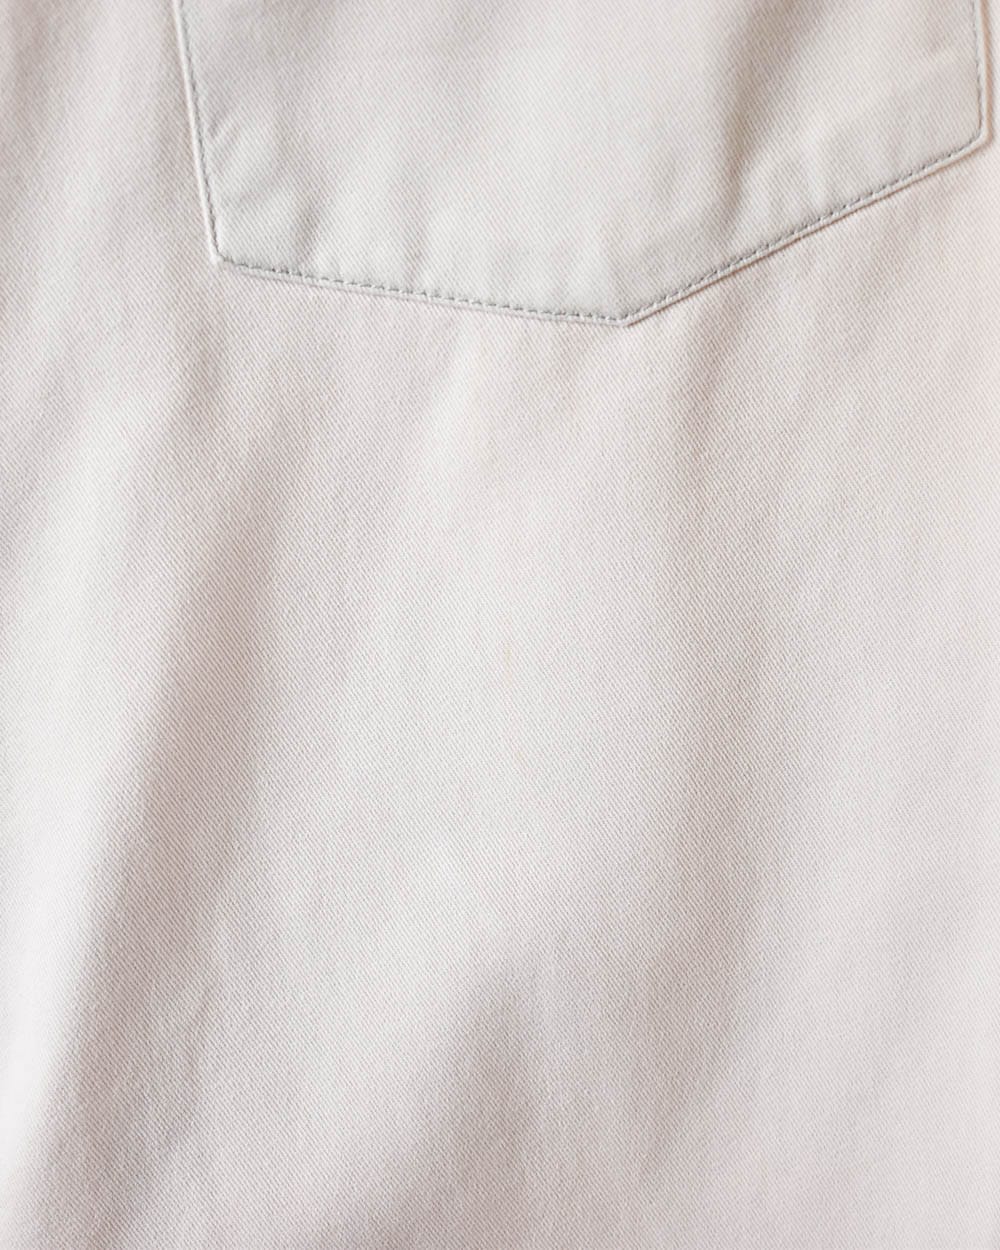 Neutral Lee Denim Shirt - Small